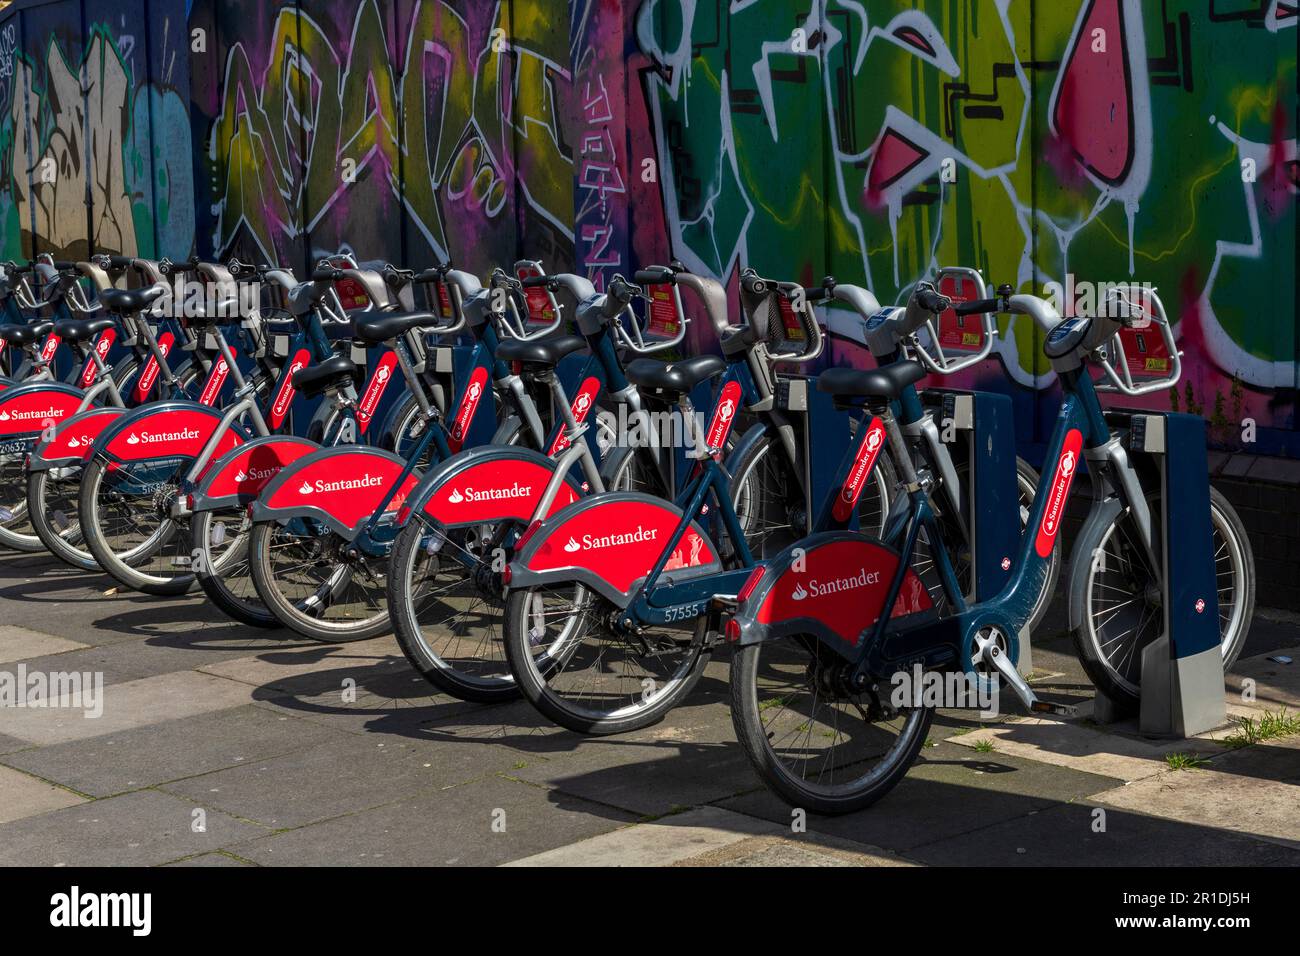 Une rangée de cycles de Santander dans une station d'accueil, partie du programme de location de cycle TFL communément appelé Boris Bikes New Road, Whitechapel, Londres, Royaume-Uni. 7 AP Banque D'Images